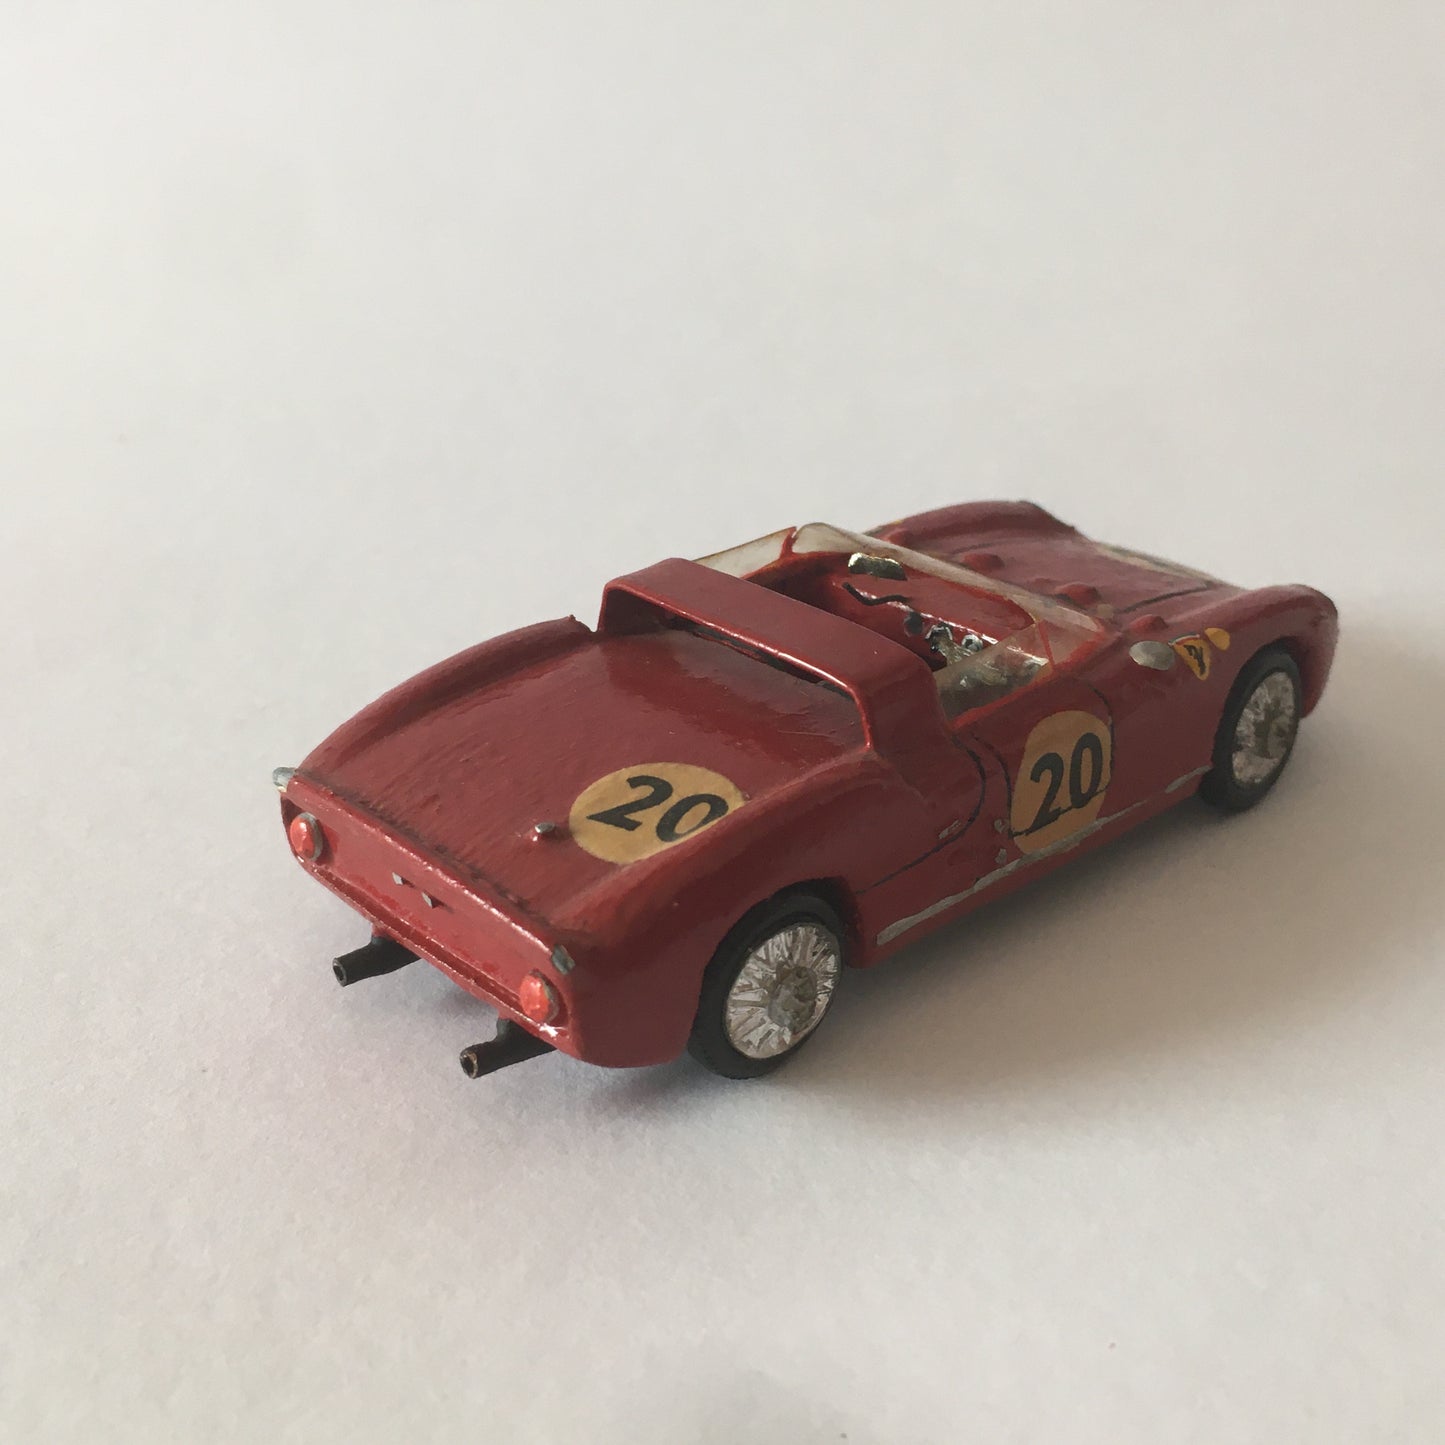 Ferrari, Modellino Artigianale in Legno RD Marmande Ferrari 275 P Numero di Serie 11 Anno 1965 Scala 1:43